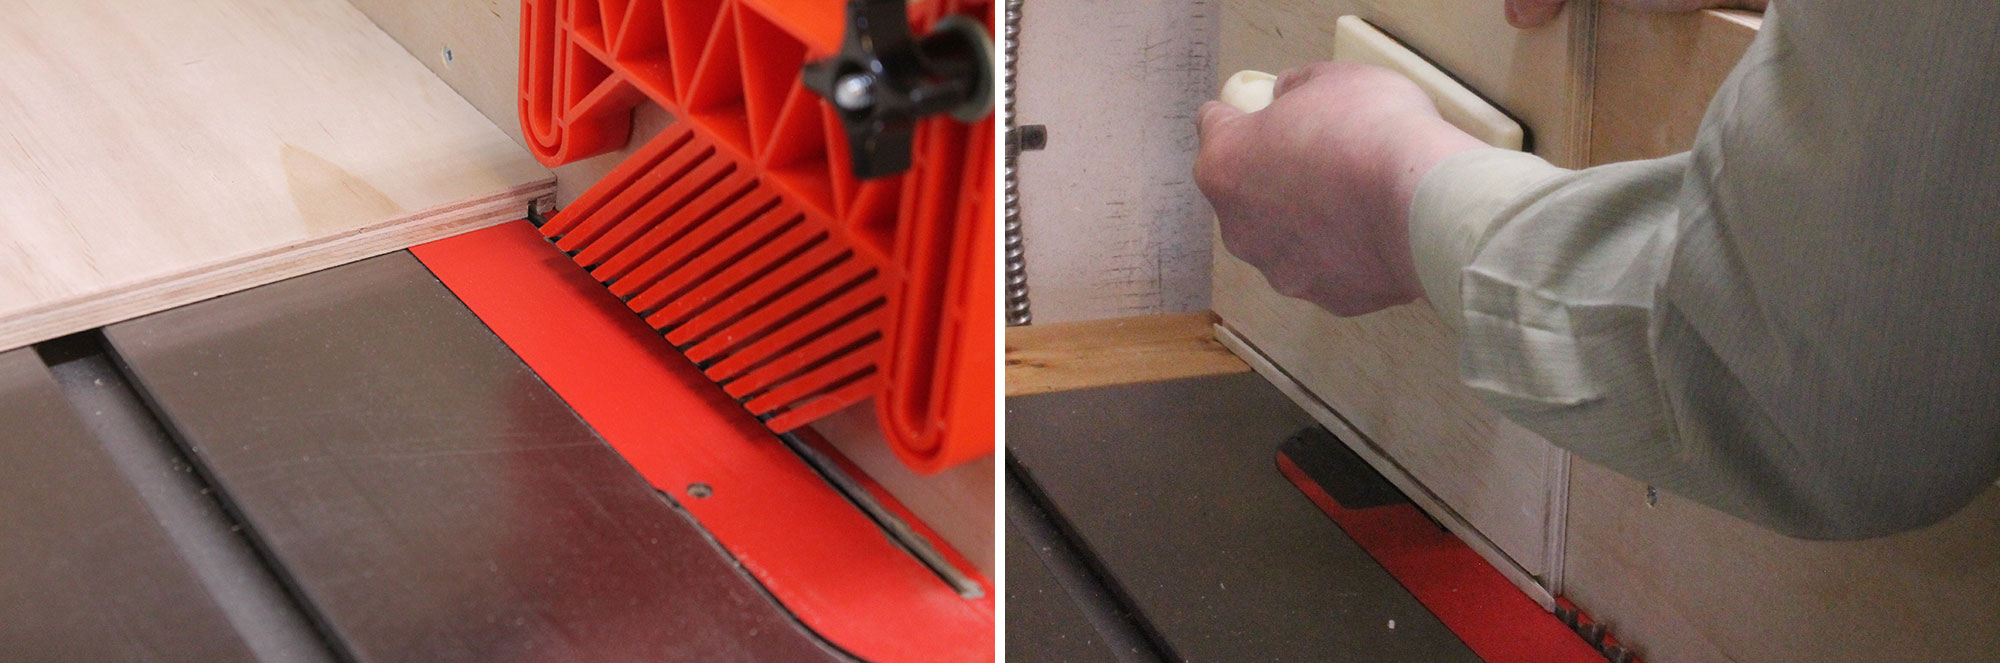 Image de gauche : Trait de scie fait dans une pièce de contreplaqué sur un banc de scie. Image de droite : Personne passant une pièce de contreplaqué à la verticale sur un banc de scie équipé d'un guide vertical.